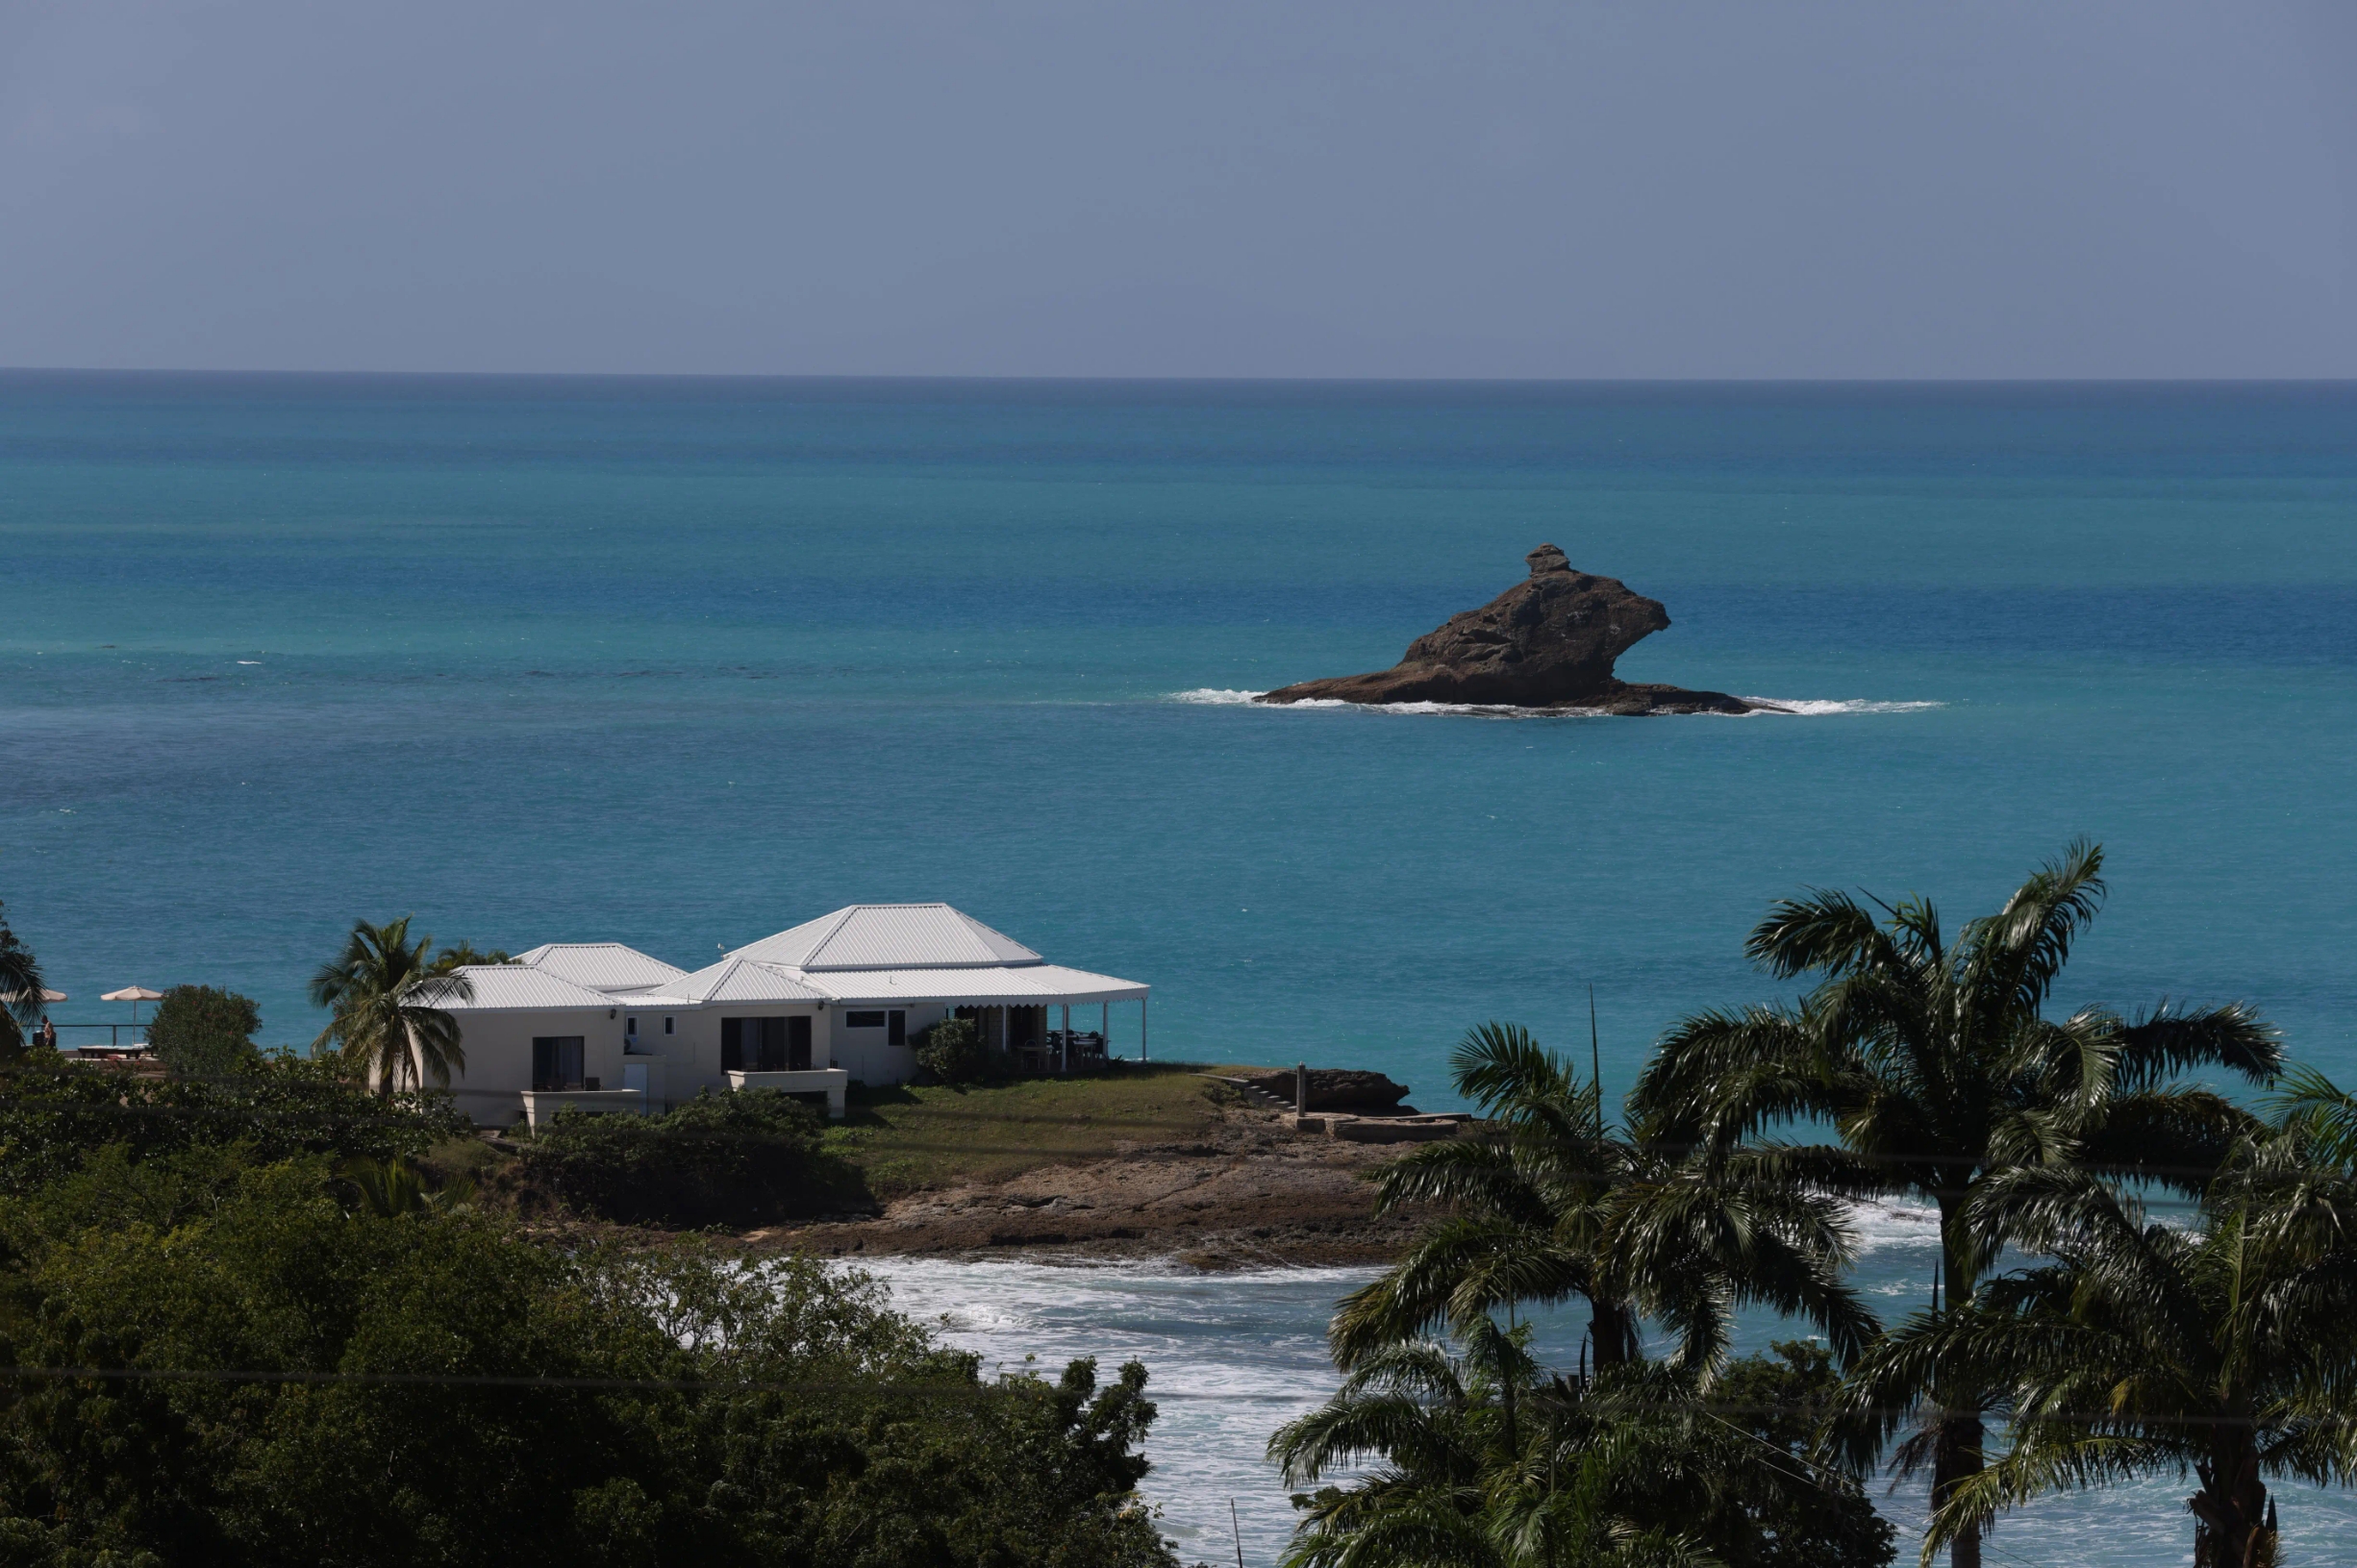 安提瓜和巴布达，是位于加勒比海的美丽岛国，碧海蓝天，风景如画。 #发现旅途的色彩 #不一样的海岛风情